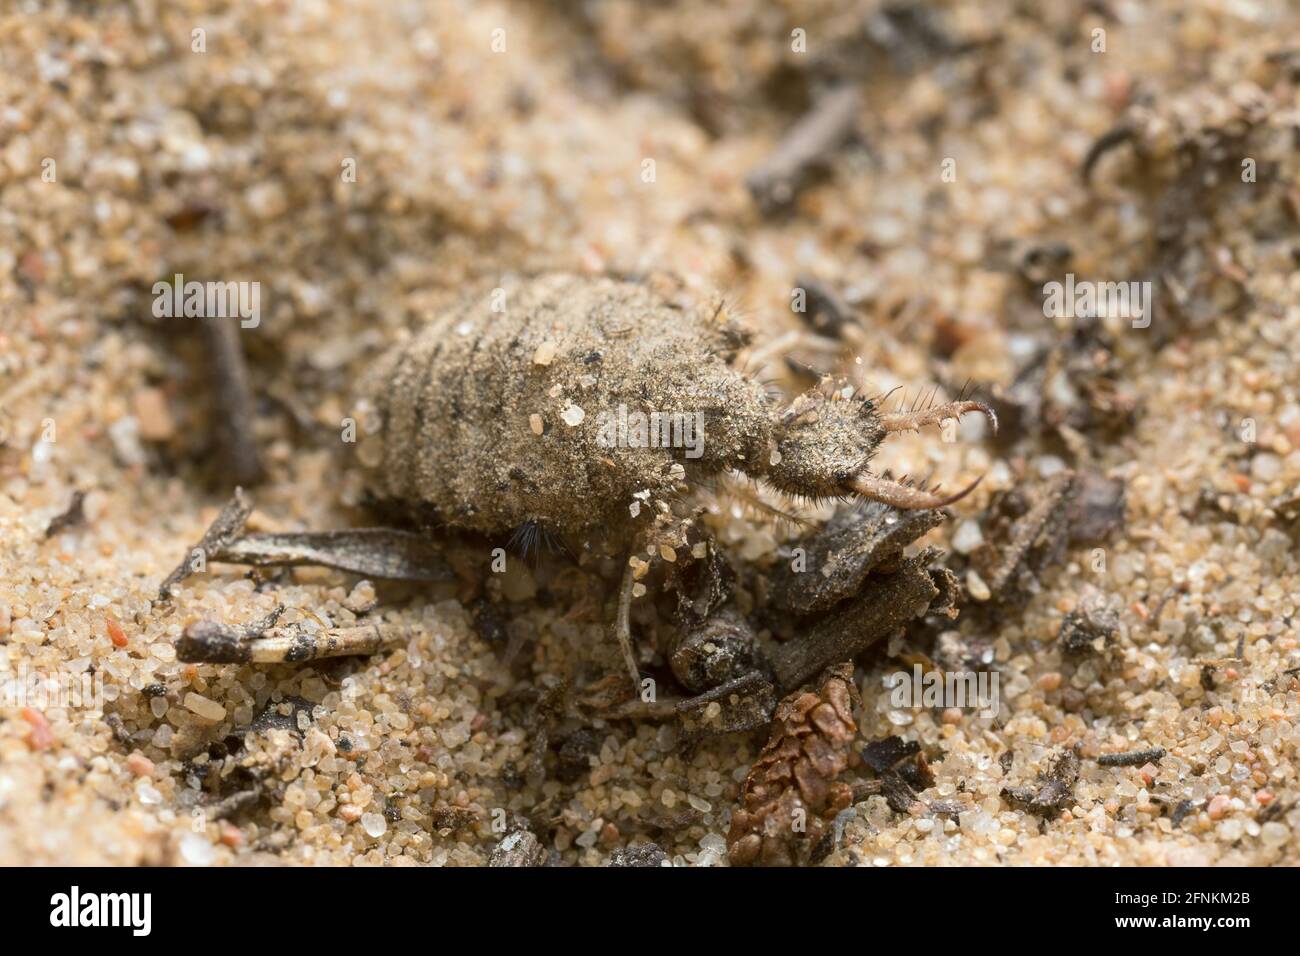 Antlion larva on sand Stock Photo